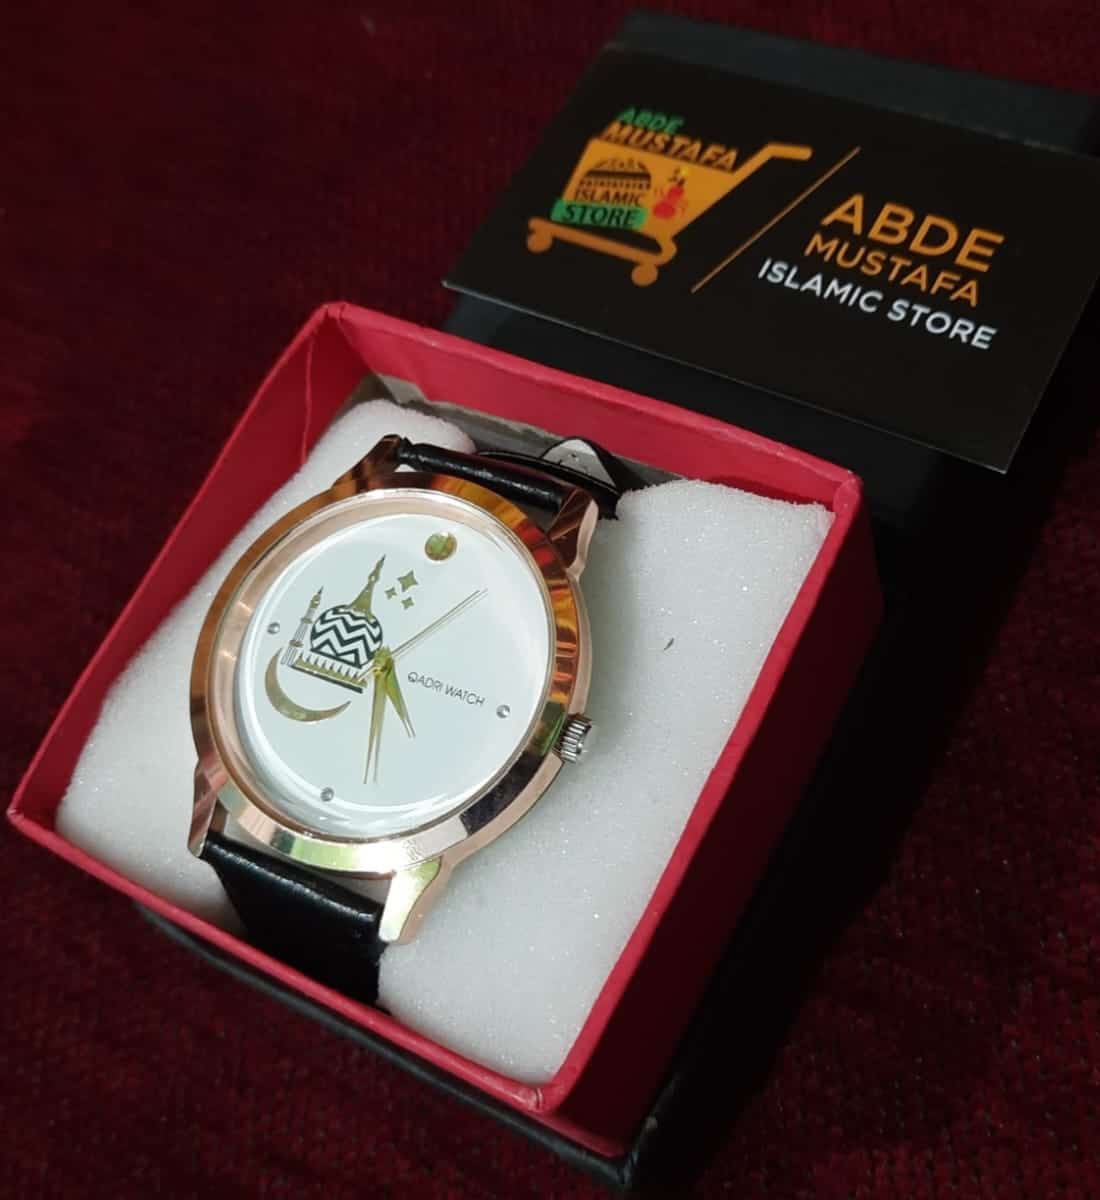 Gumbad E Raza Watch Exclusive Design By Abde Mustafa Store (Model No.1100)